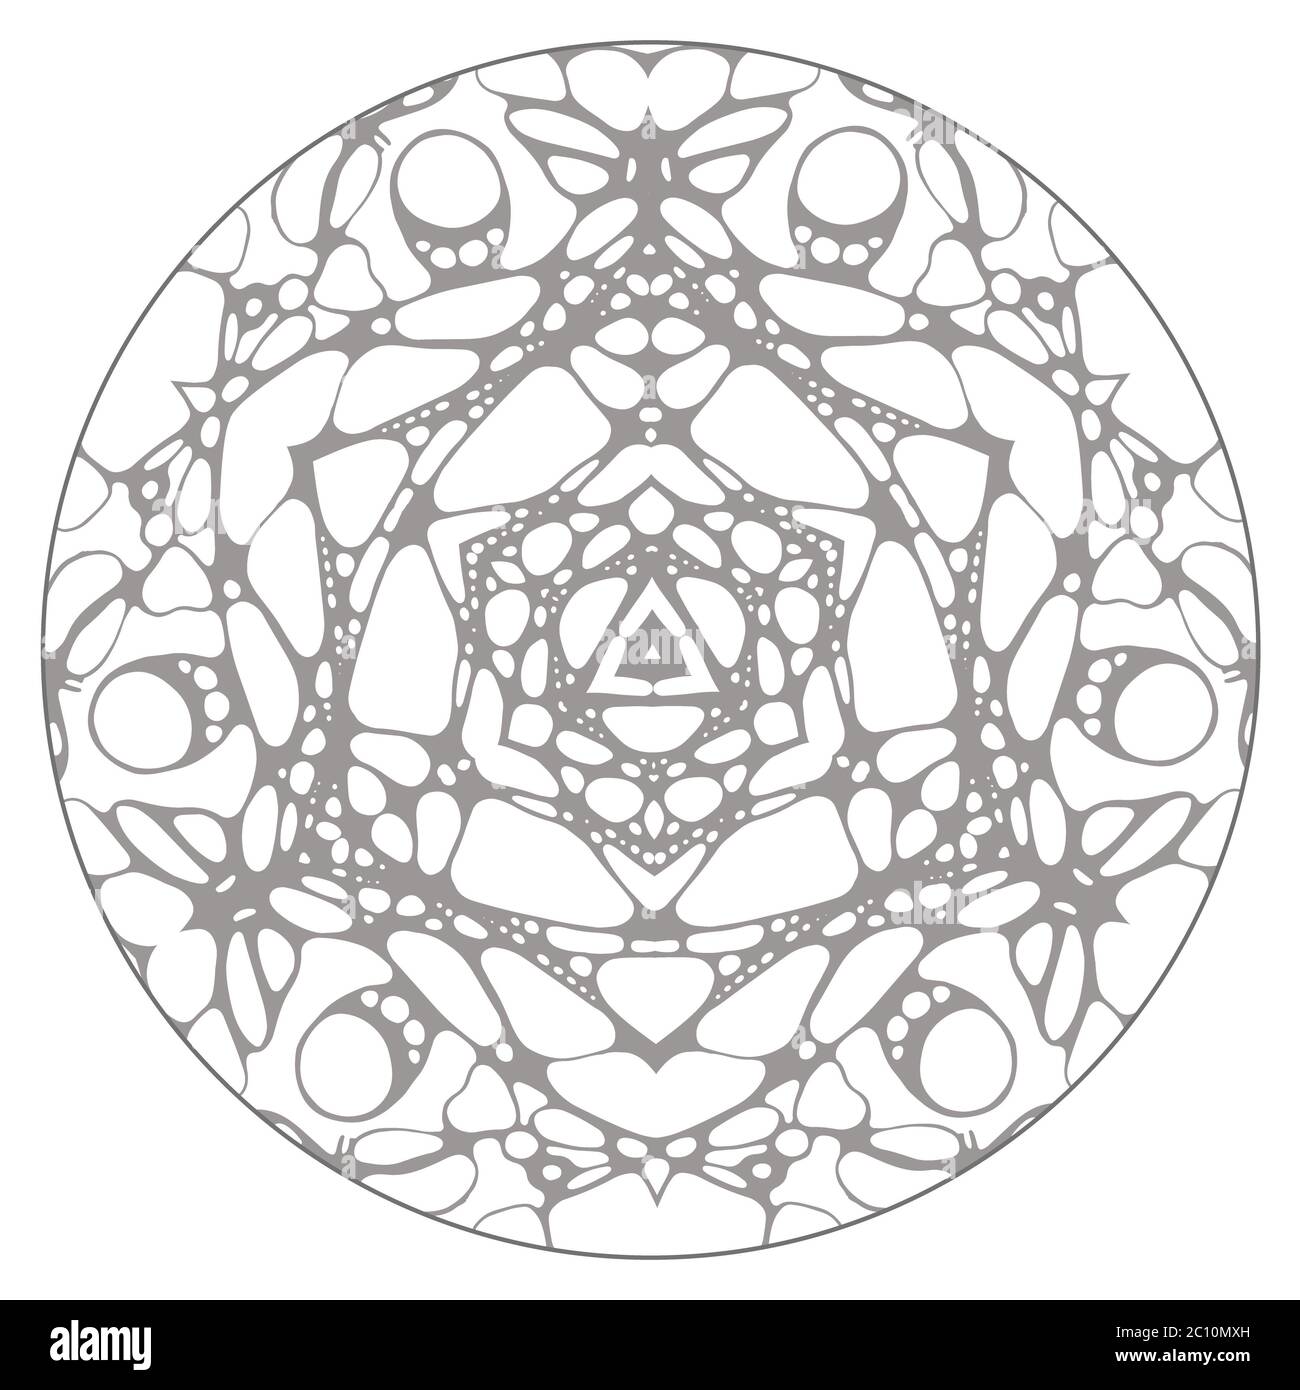 Schwarz / weiß handgemalte abstrakte Kaleidoskop-Vektor-Illustration. Stockfoto